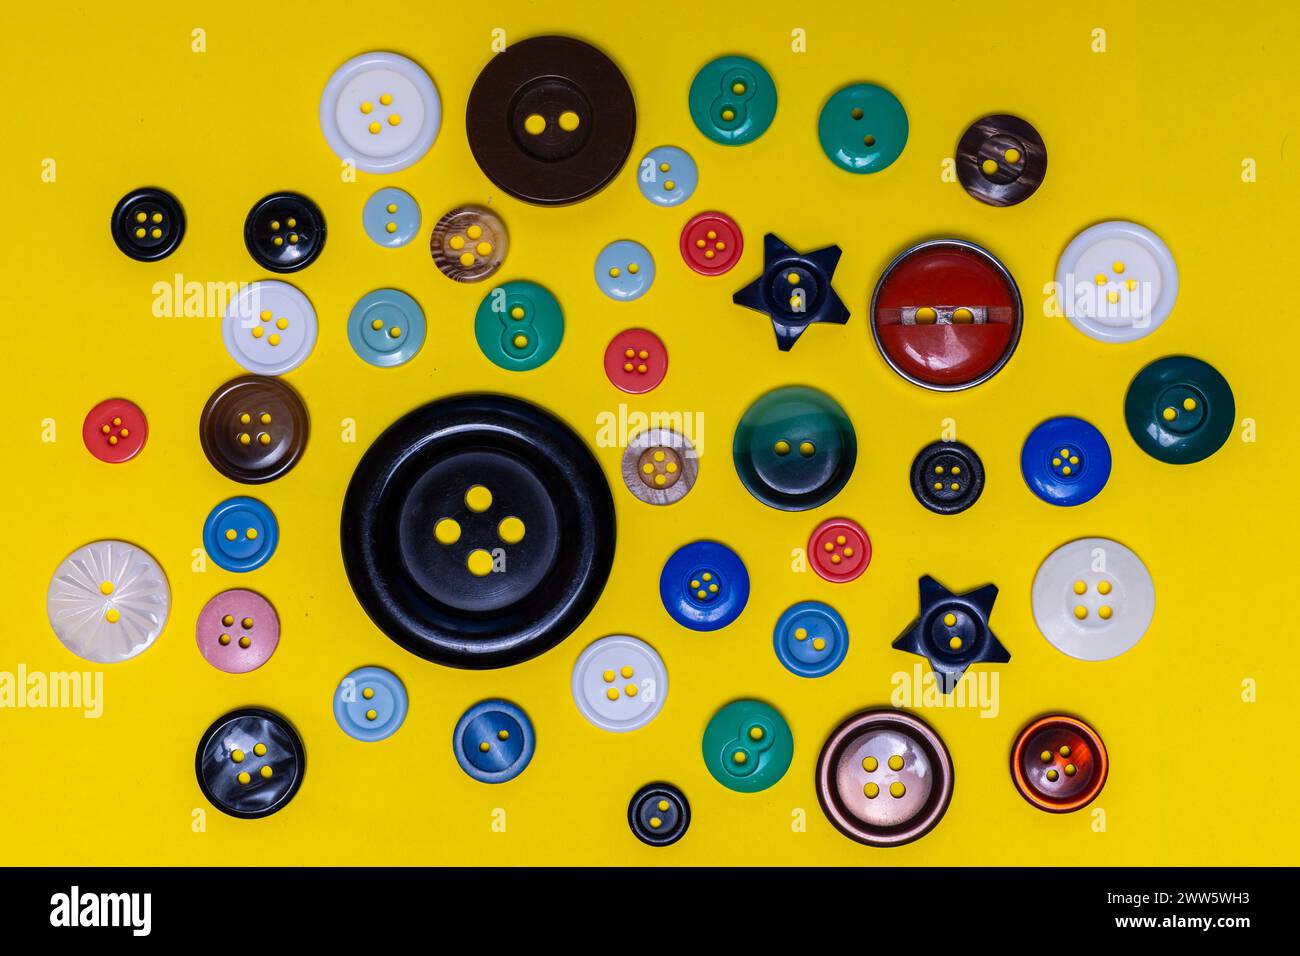 Botones corrientes de diversos tamaños, colores, formas y materiales Foto Stock